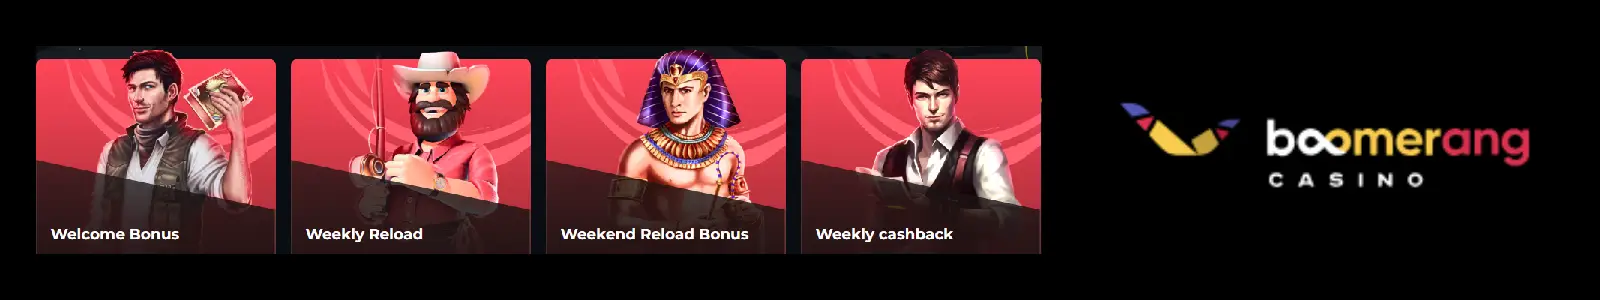 Boomerang casino welcome bonus